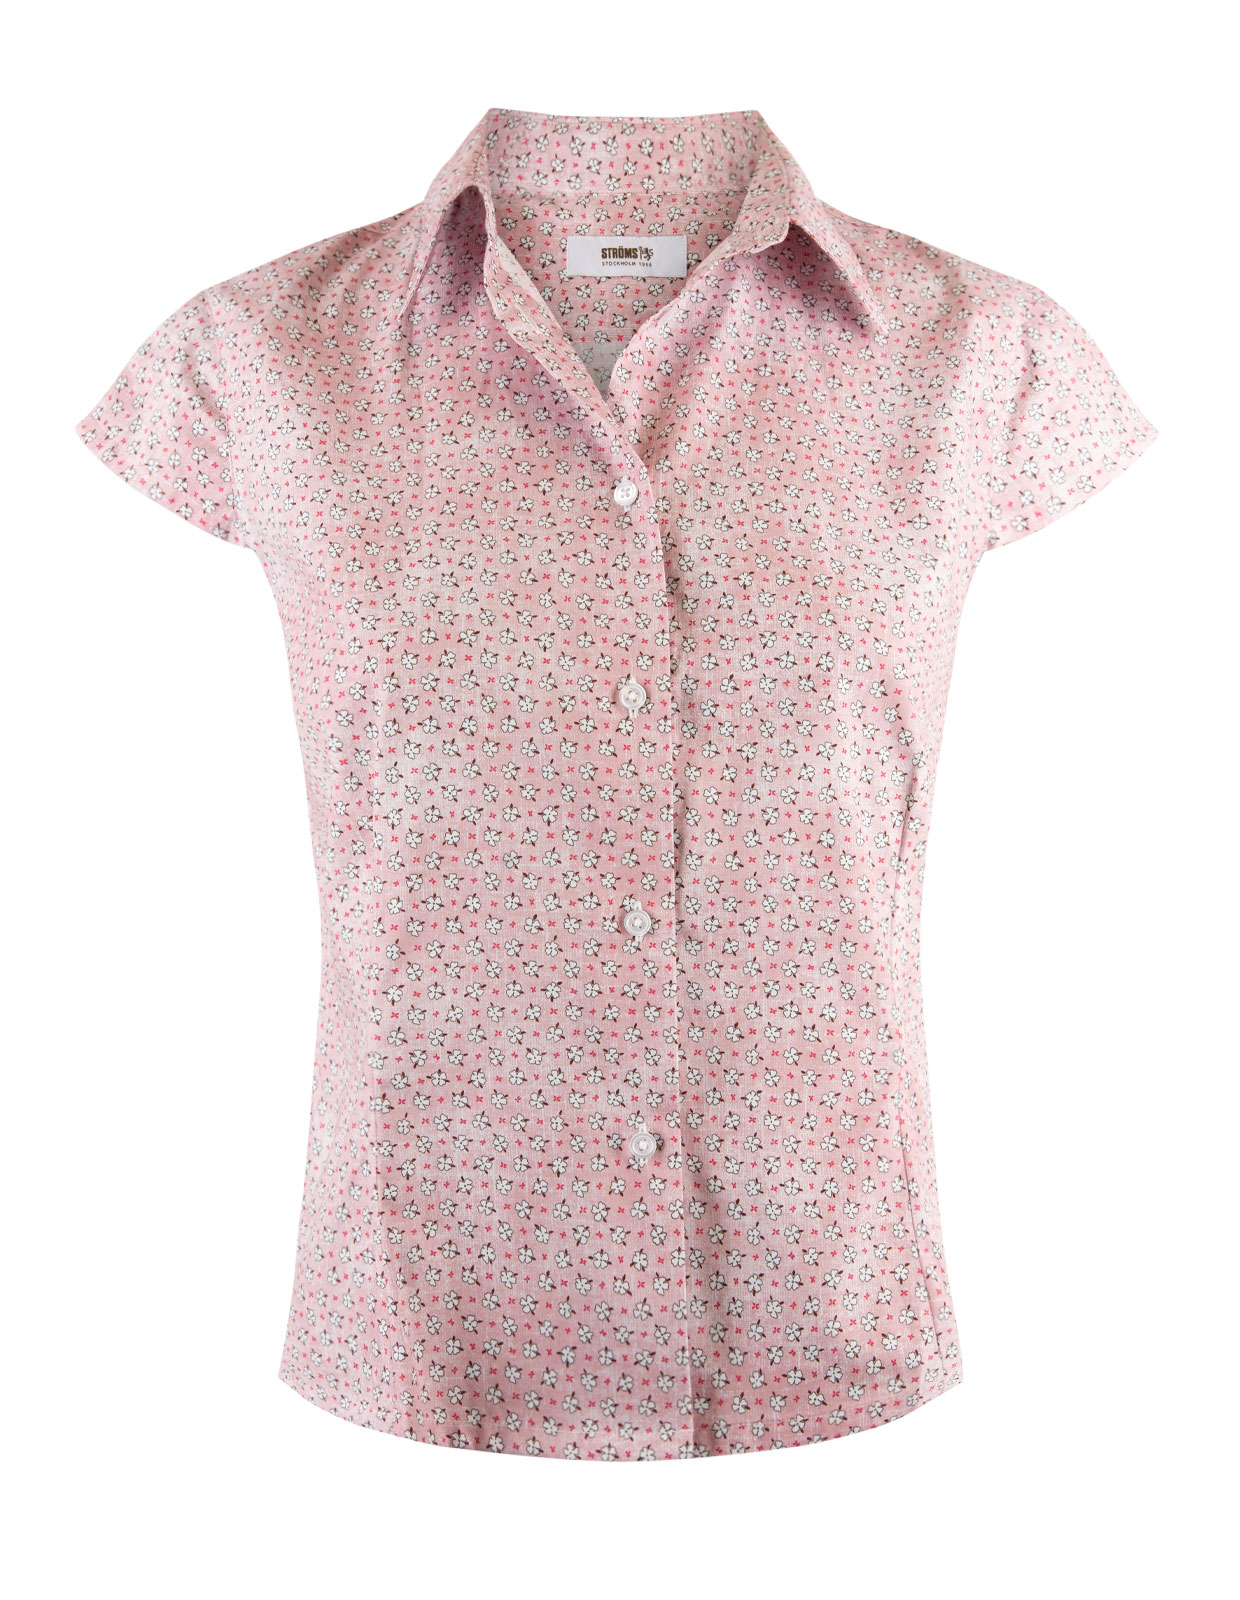 Cotton Shirt Cap Sleeve Pink Flower